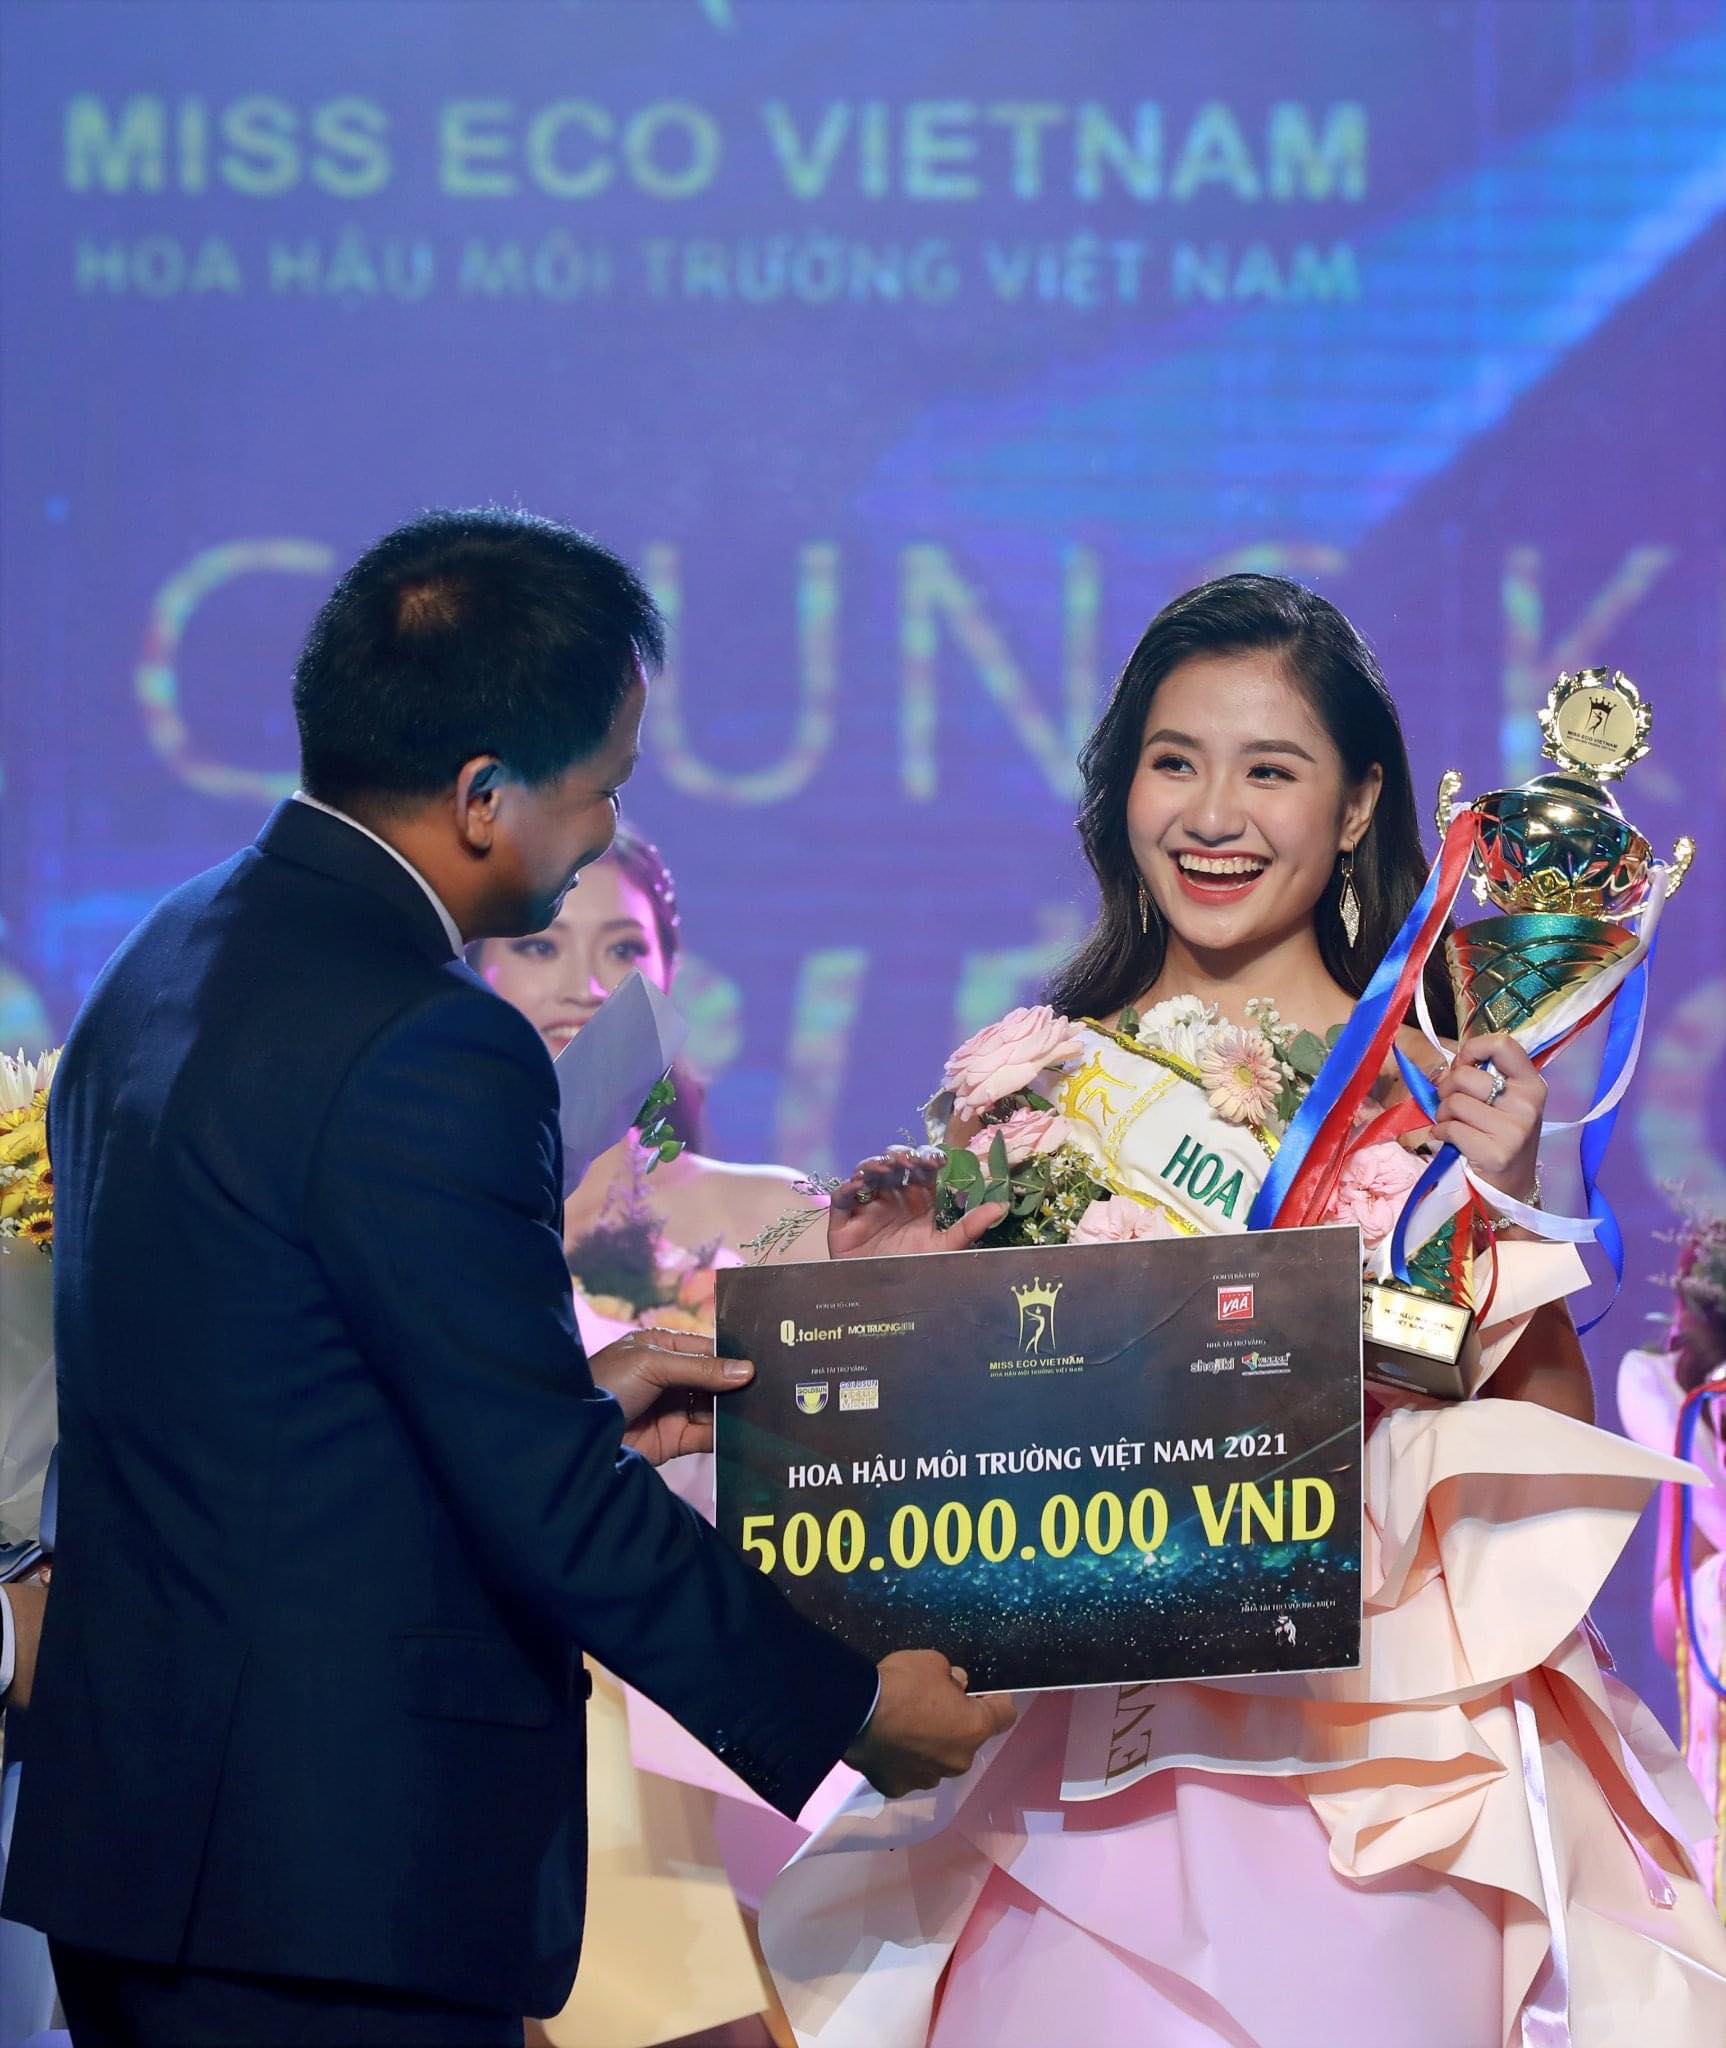 Nữ sinh 18 tuổi quê Bến Tre đăng quang “Hoa hậu Môi trường Việt Nam”, nhận thưởng 500 triệu - 1